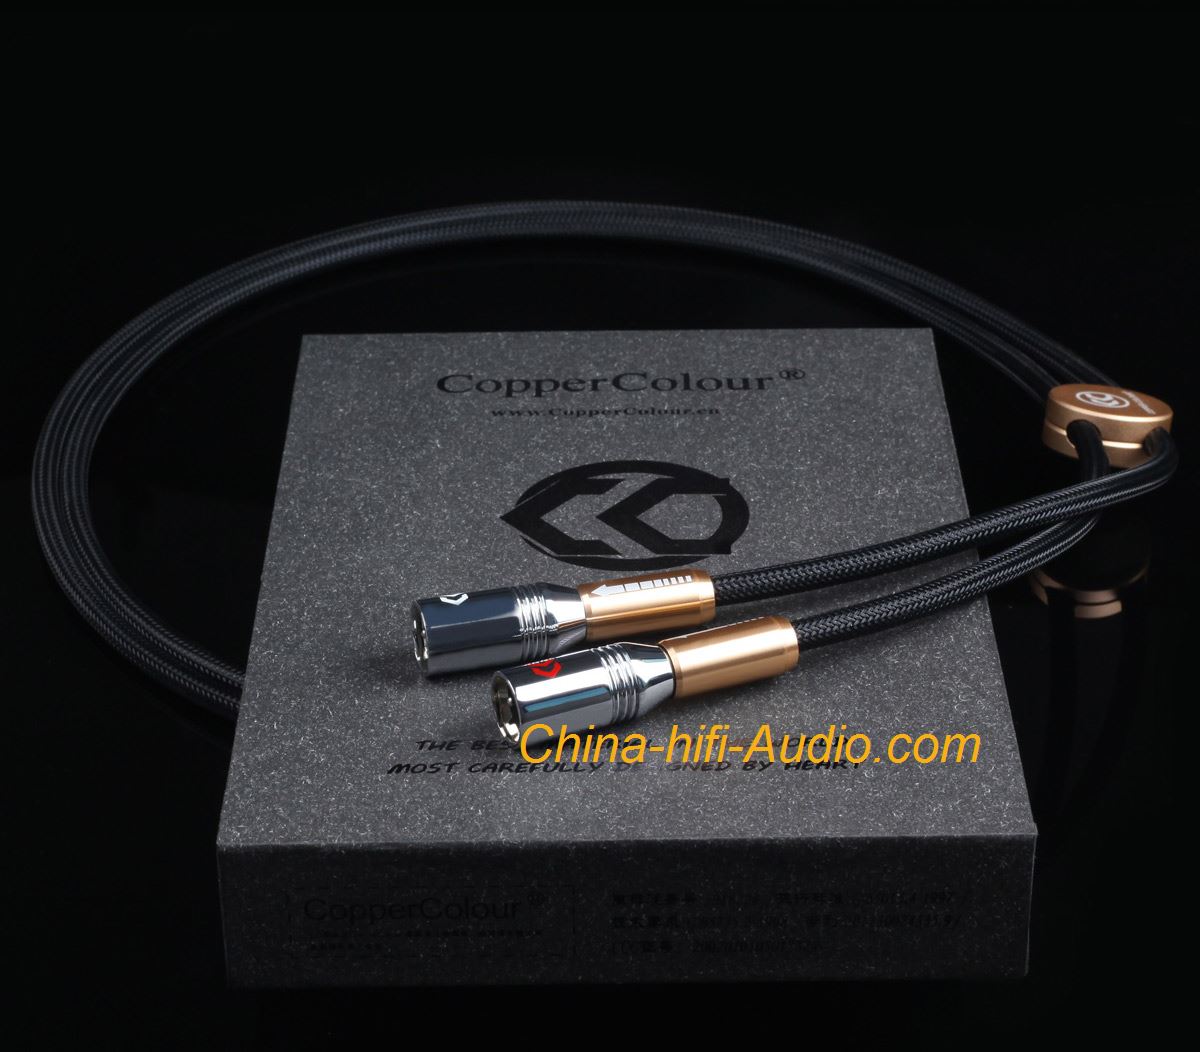 COPPER COLOUR Alpha Audiophile Cable CC XLR plug audio interconnect cord pair - Click Image to Close